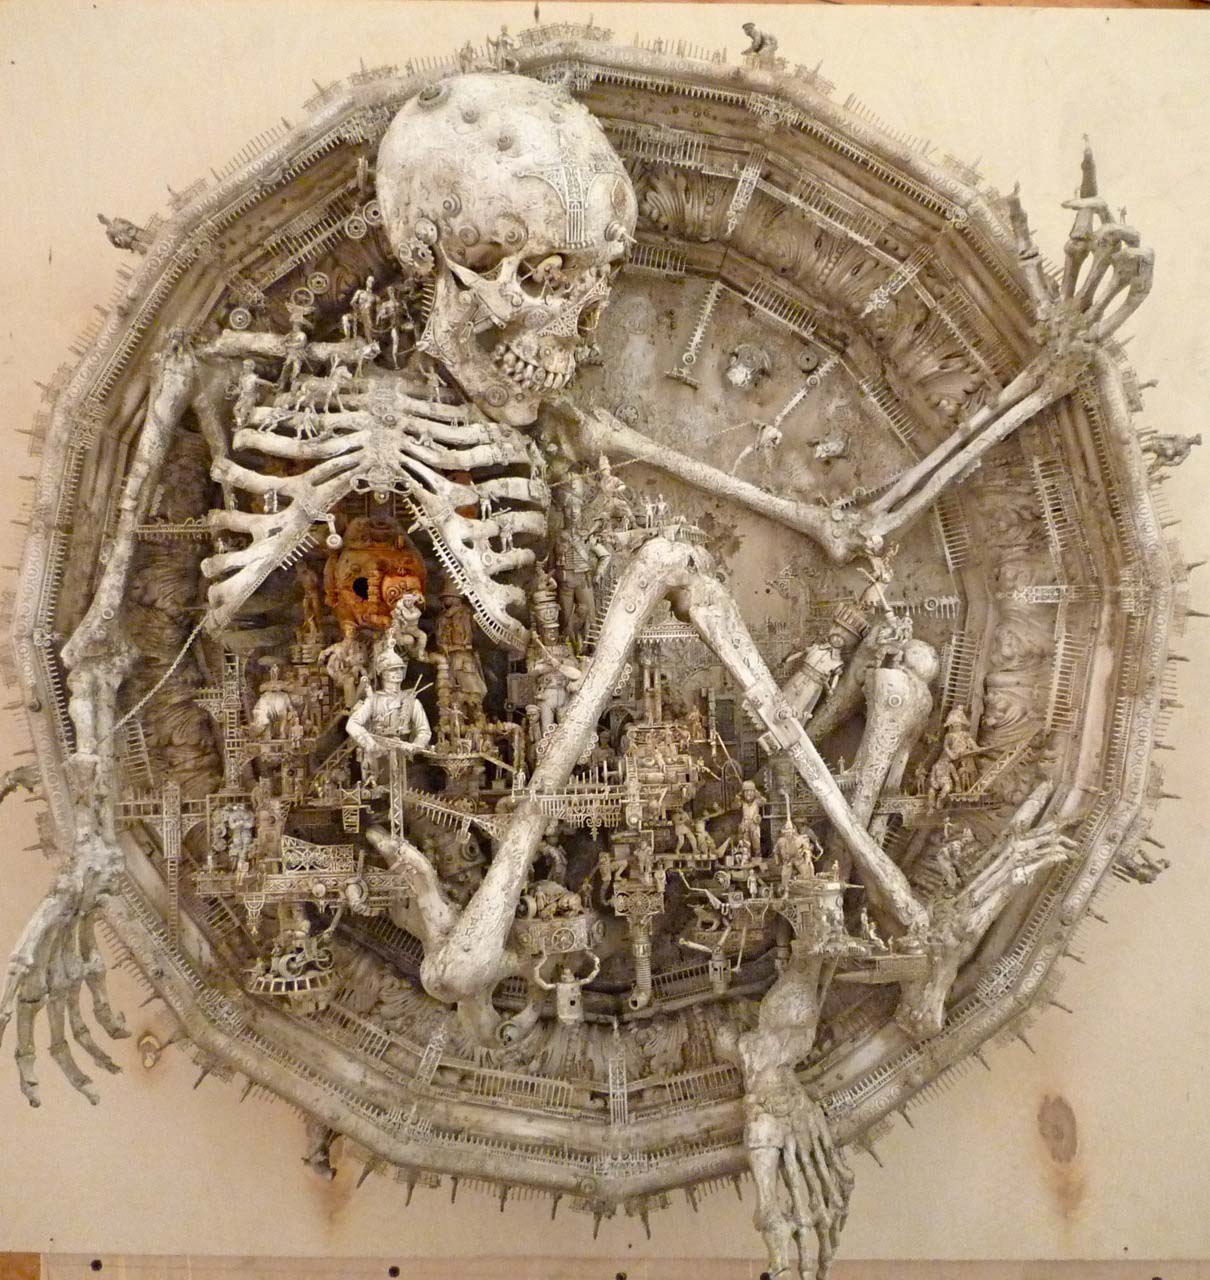 The Fantastic Art of Kris Kuksi